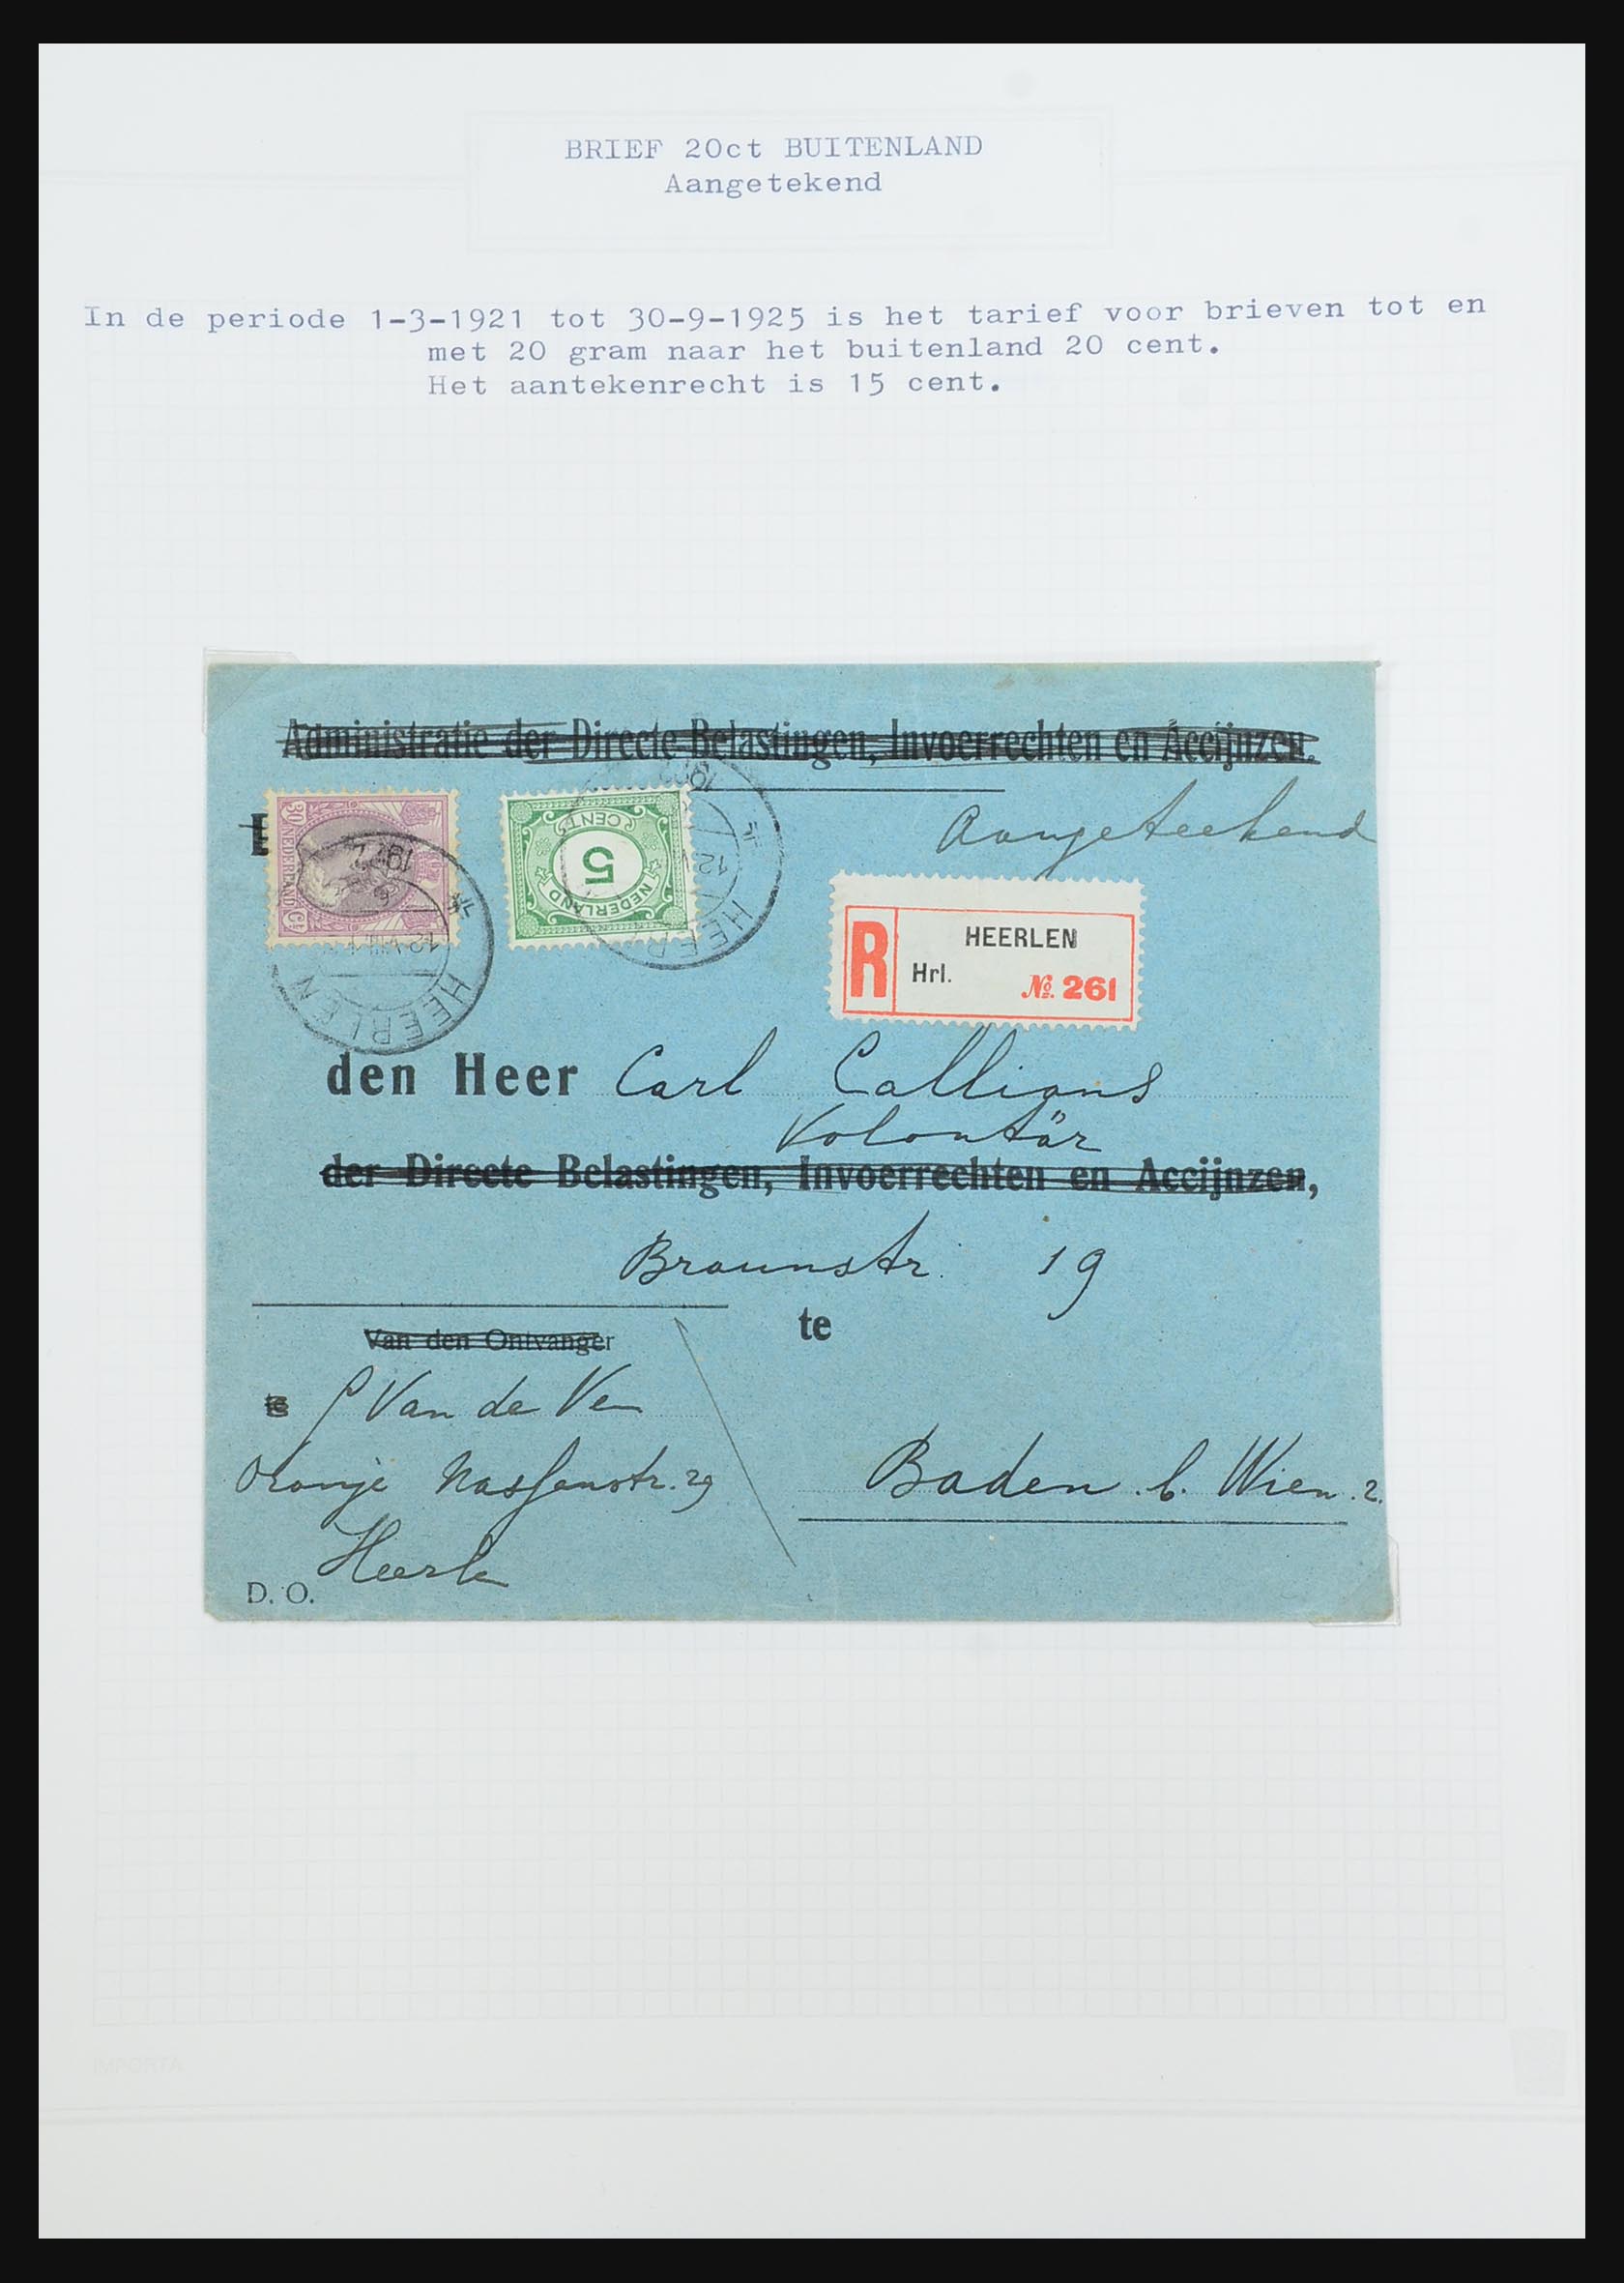 31528 201 - 31528 Nederland brieven 1853-1953.